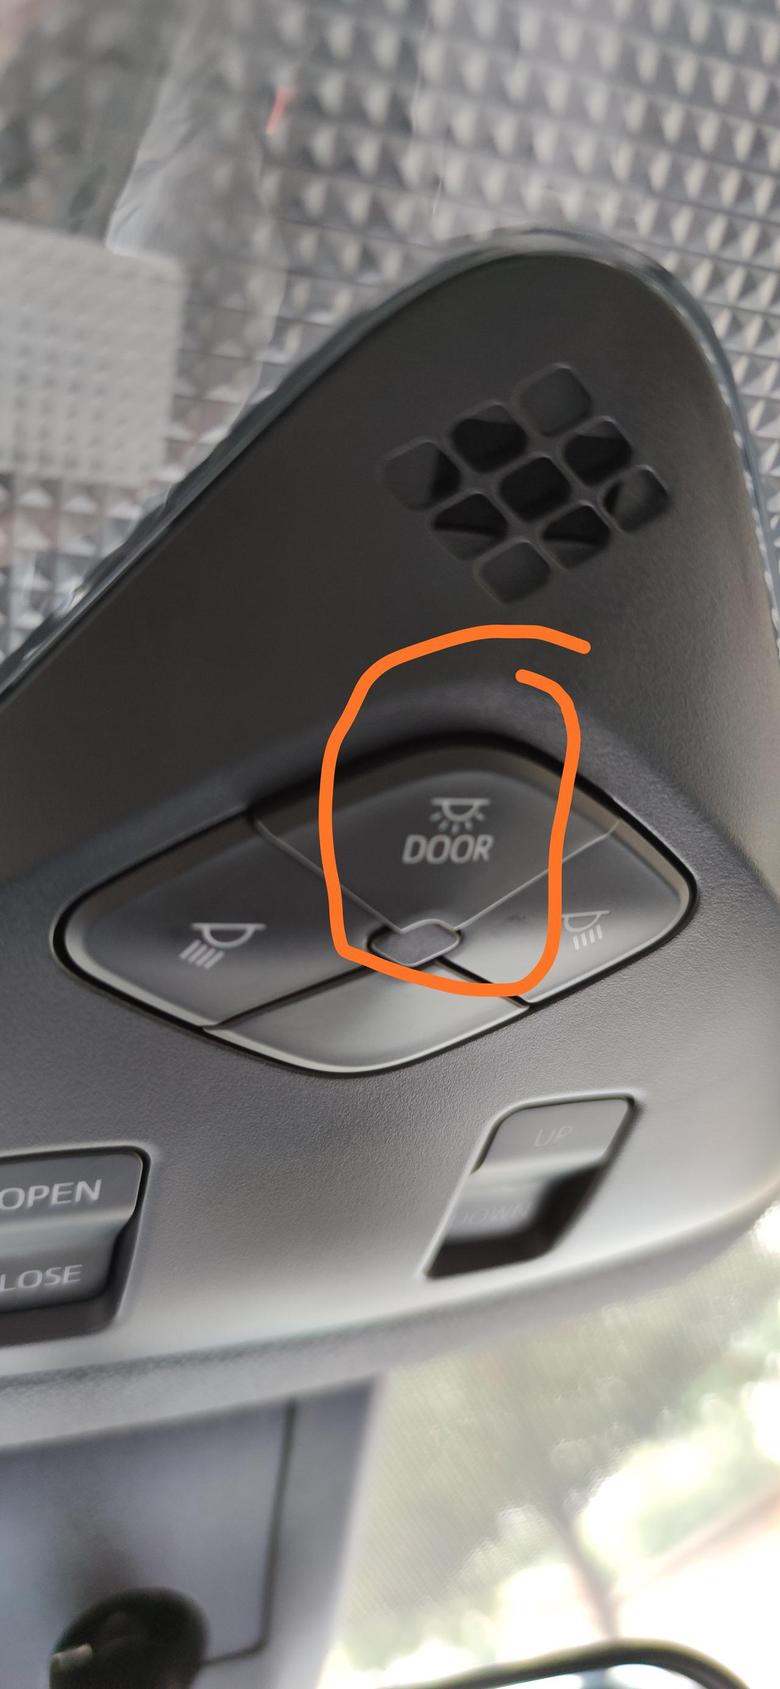 丰田c hr 问下老司机们，这个灯中间按钮干嘛用的呢？